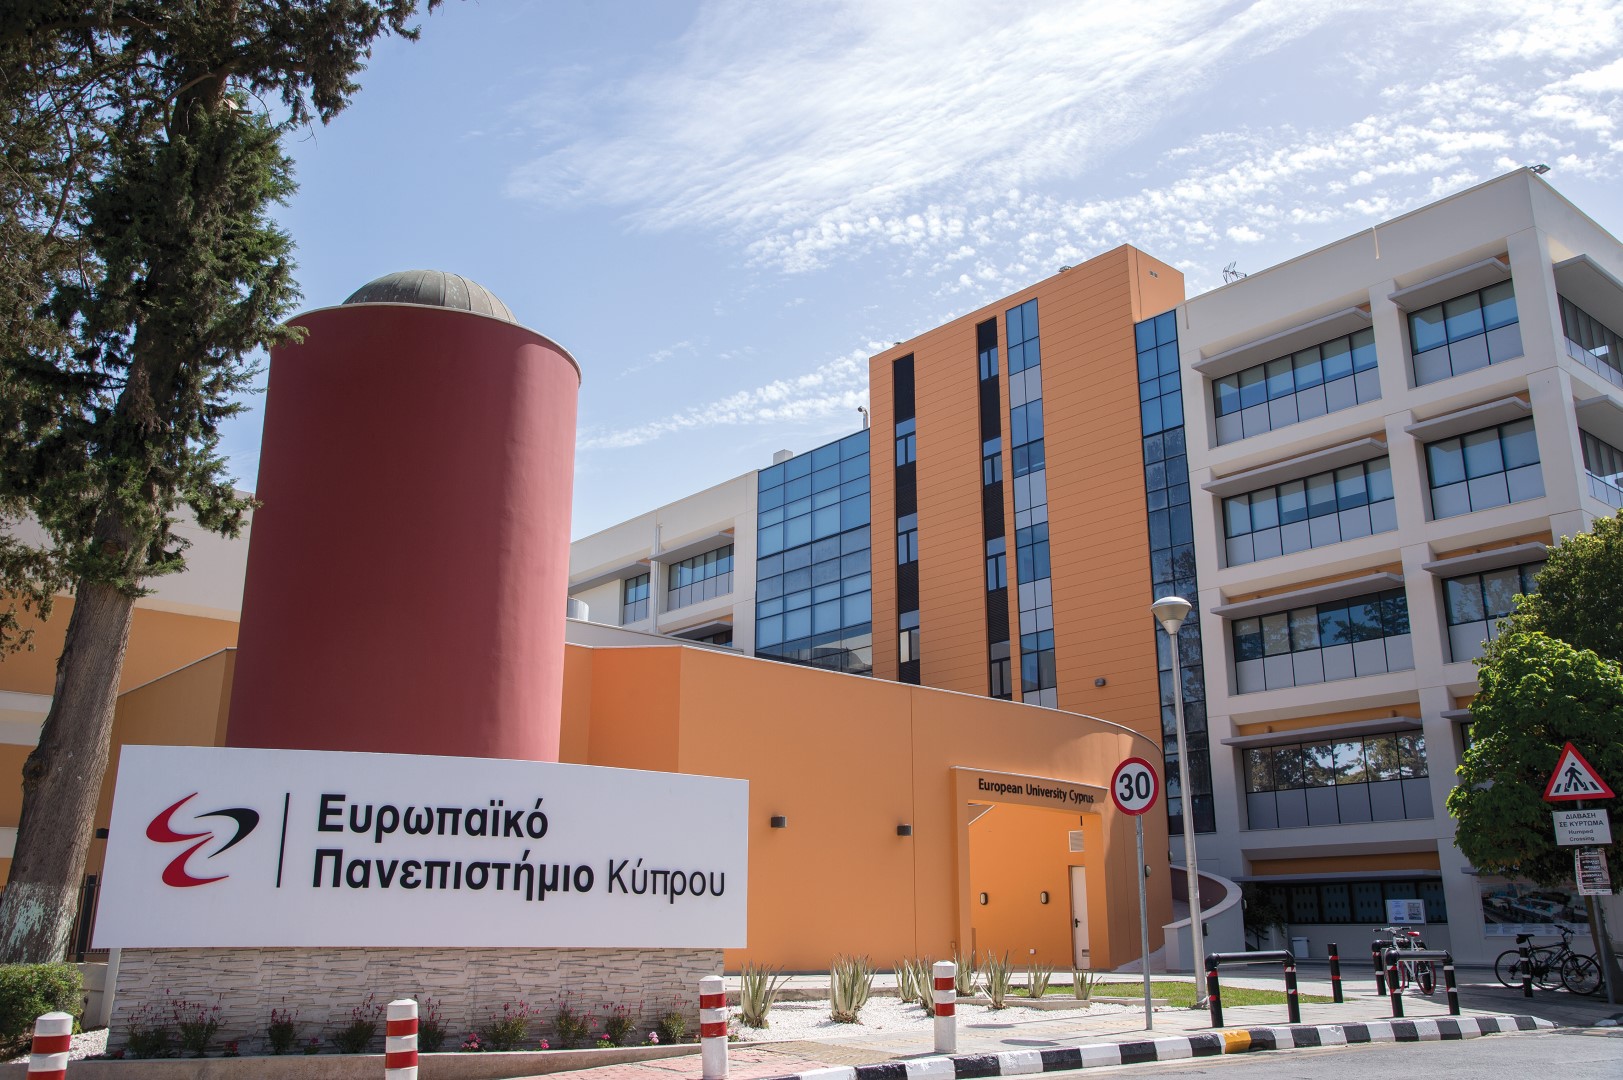 Τελετή Απονομής των Ετήσιων Βραβείων Αριστείας στην Έρευνα από το Ευρωπαϊκό Πανεπιστήμιο Κύπρου